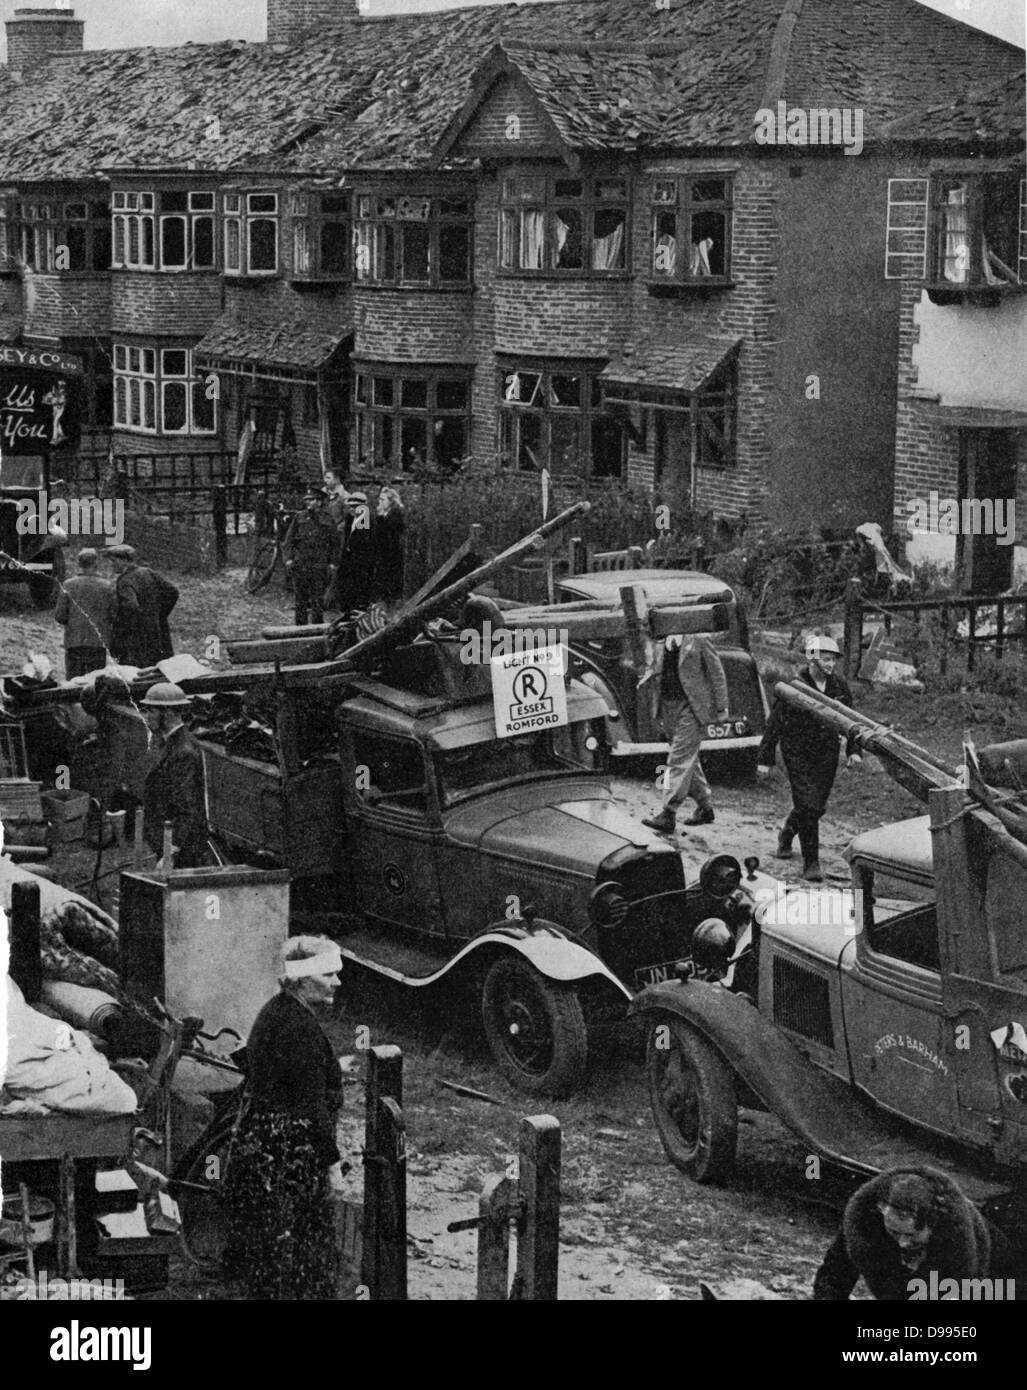 Dommages à la bombe dans une rue de banlieue. Juillet Septembre à mai 1941 bombardement soutenue de la villes, le blitz, par la Luftwaffe (Armée de l'air allemande) a tué 43 000 civils et 51 000 blessés, et détruit un million de foyers. Banque D'Images